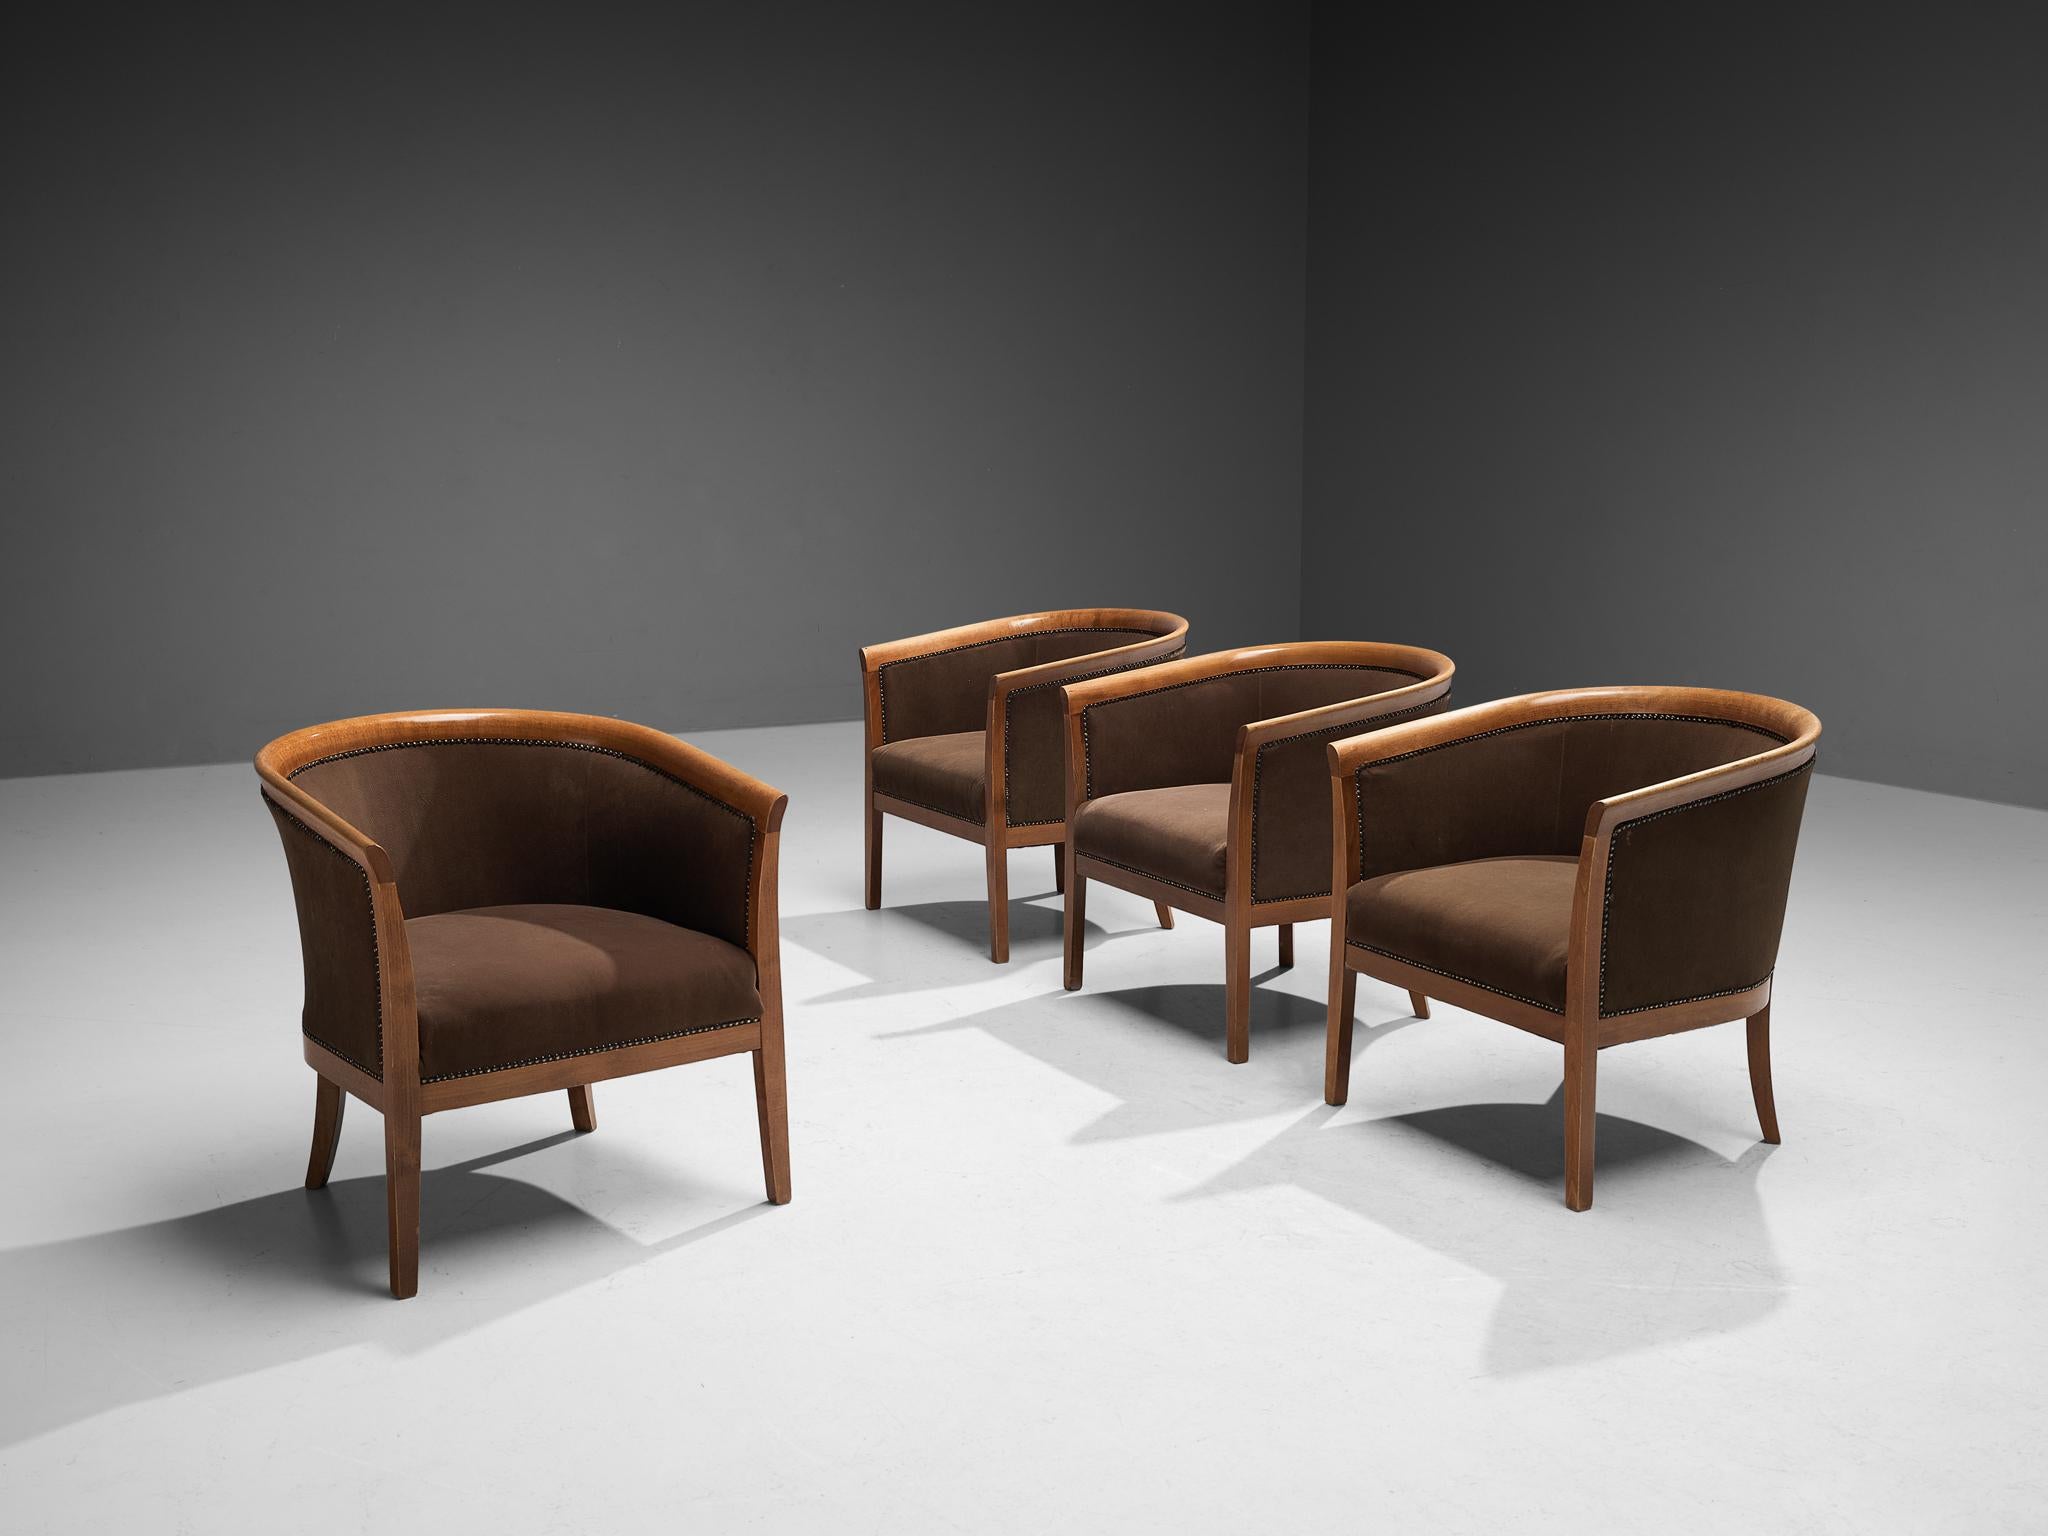 Fauteuils club, tissu brun, hêtre, laiton, France, années 1940.

Ces fauteuils à la sculpture classique présentent des assises conçues comme une coquille, qui embrasse merveilleusement l'assis. Les lignes courbes du cadre sont encore soulignées par